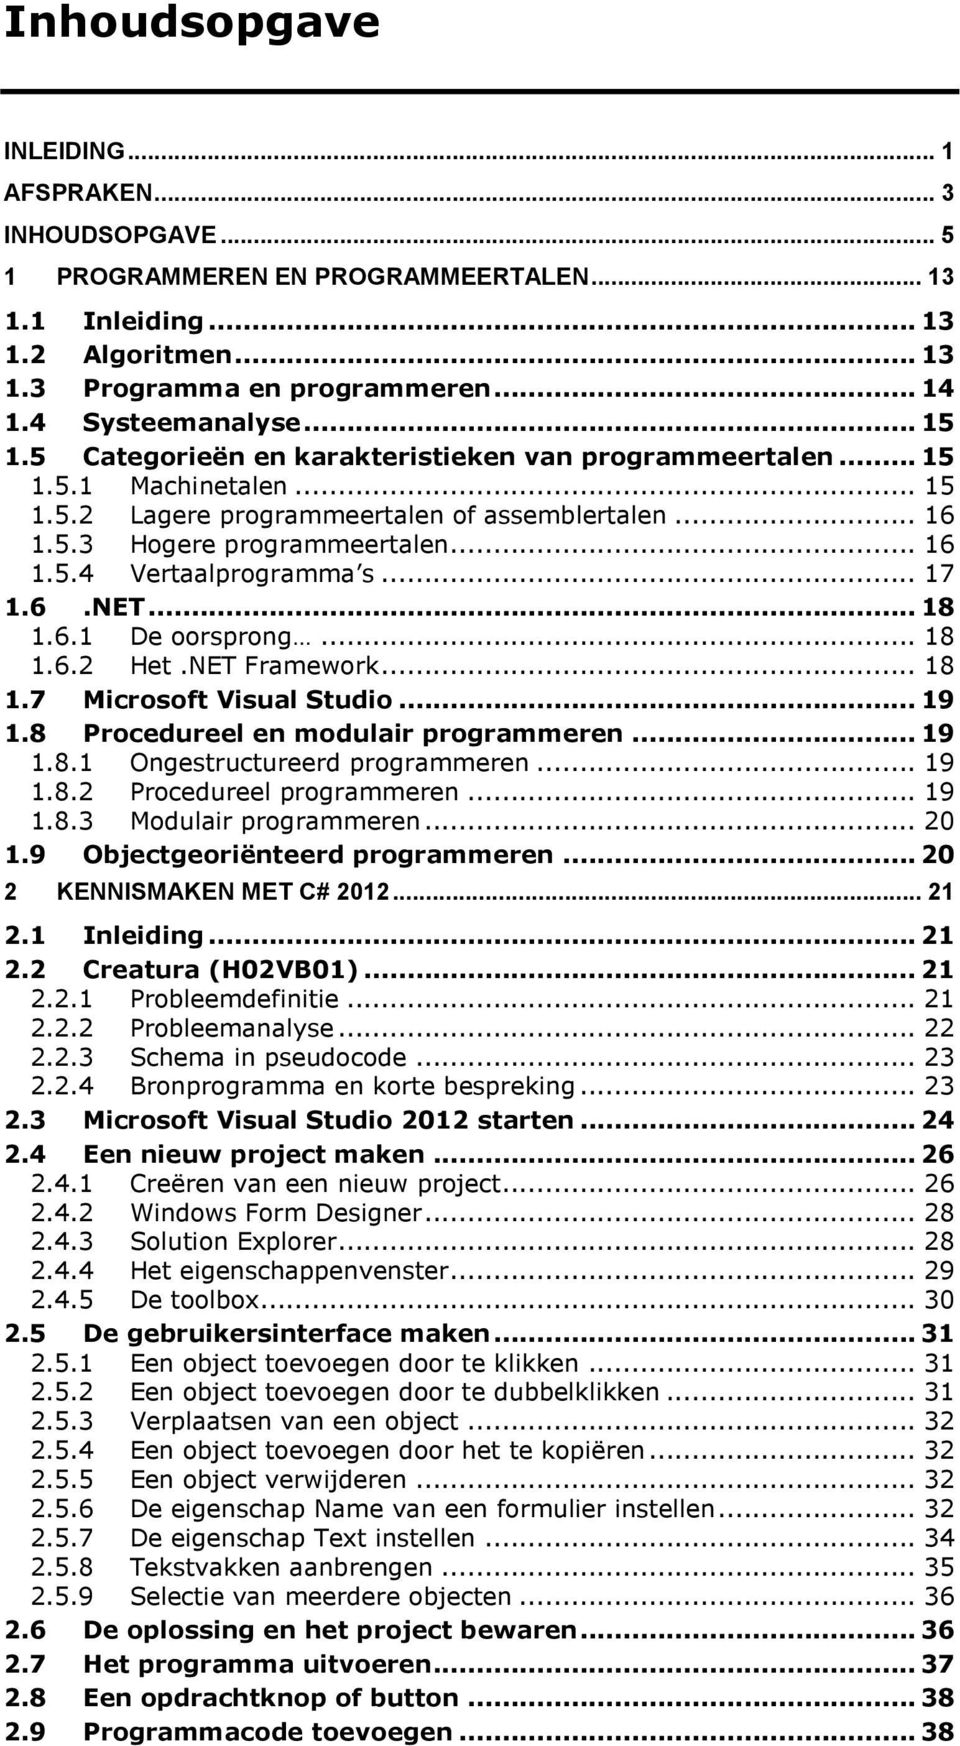 .. 17 1.6.NET... 18 1.6.1 De oorsprong... 18 1.6.2 Het.NET Framework... 18 1.7 Microsoft Visual Studio... 19 1.8 Procedureel en modulair programmeren... 19 1.8.1 Ongestructureerd programmeren... 19 1.8.2 Procedureel programmeren.